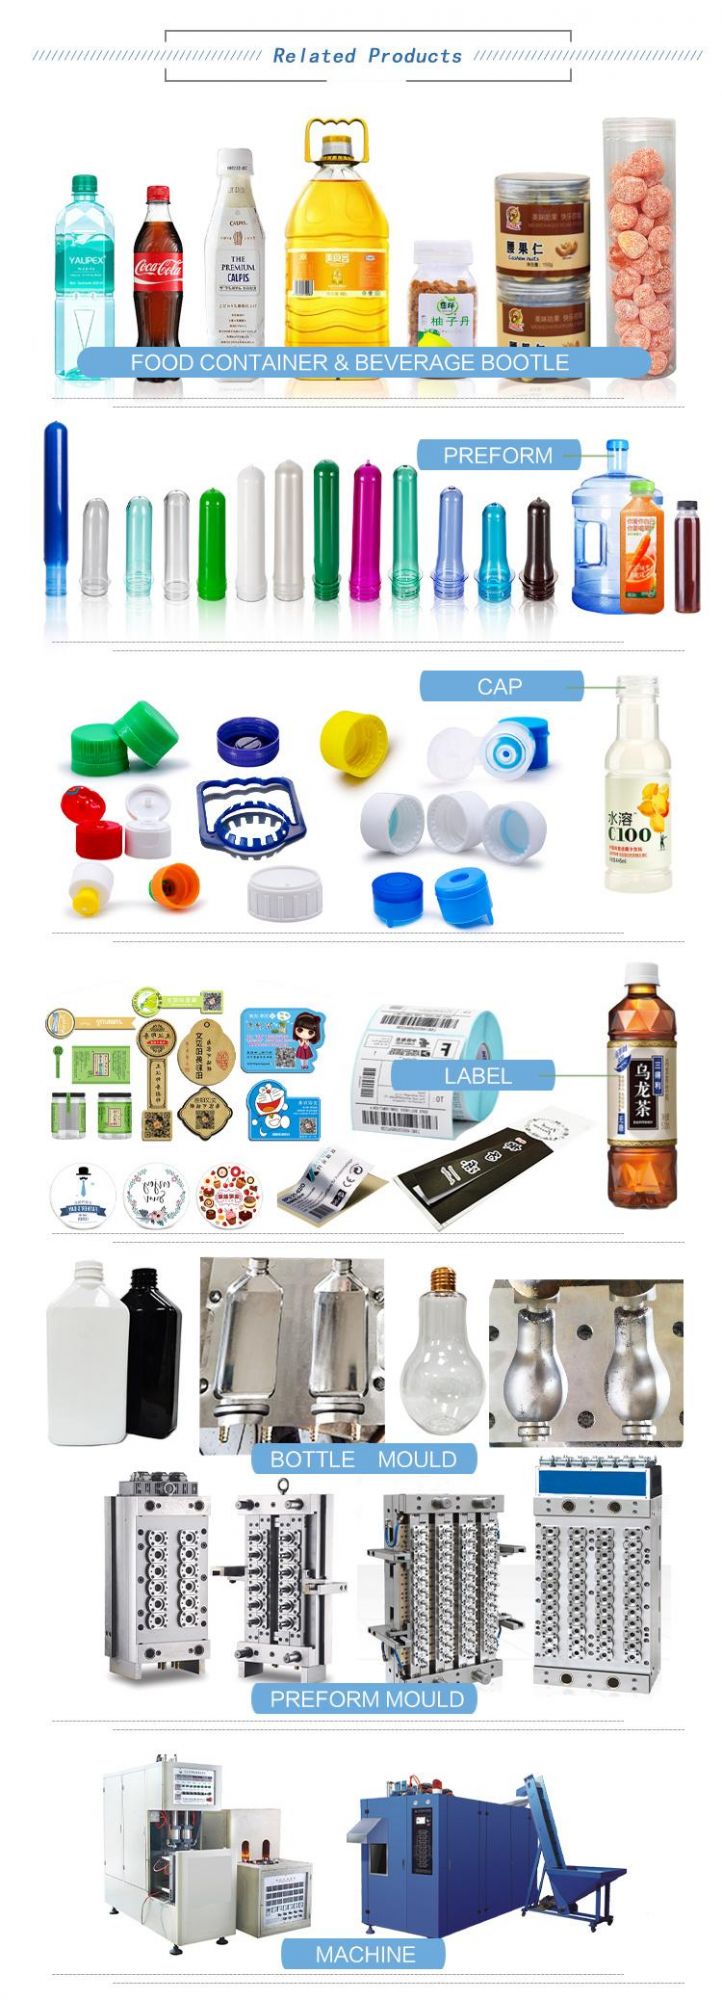 18g Mineral Water Bottle Pet Preform Transparent 30/25mm Neck Finish